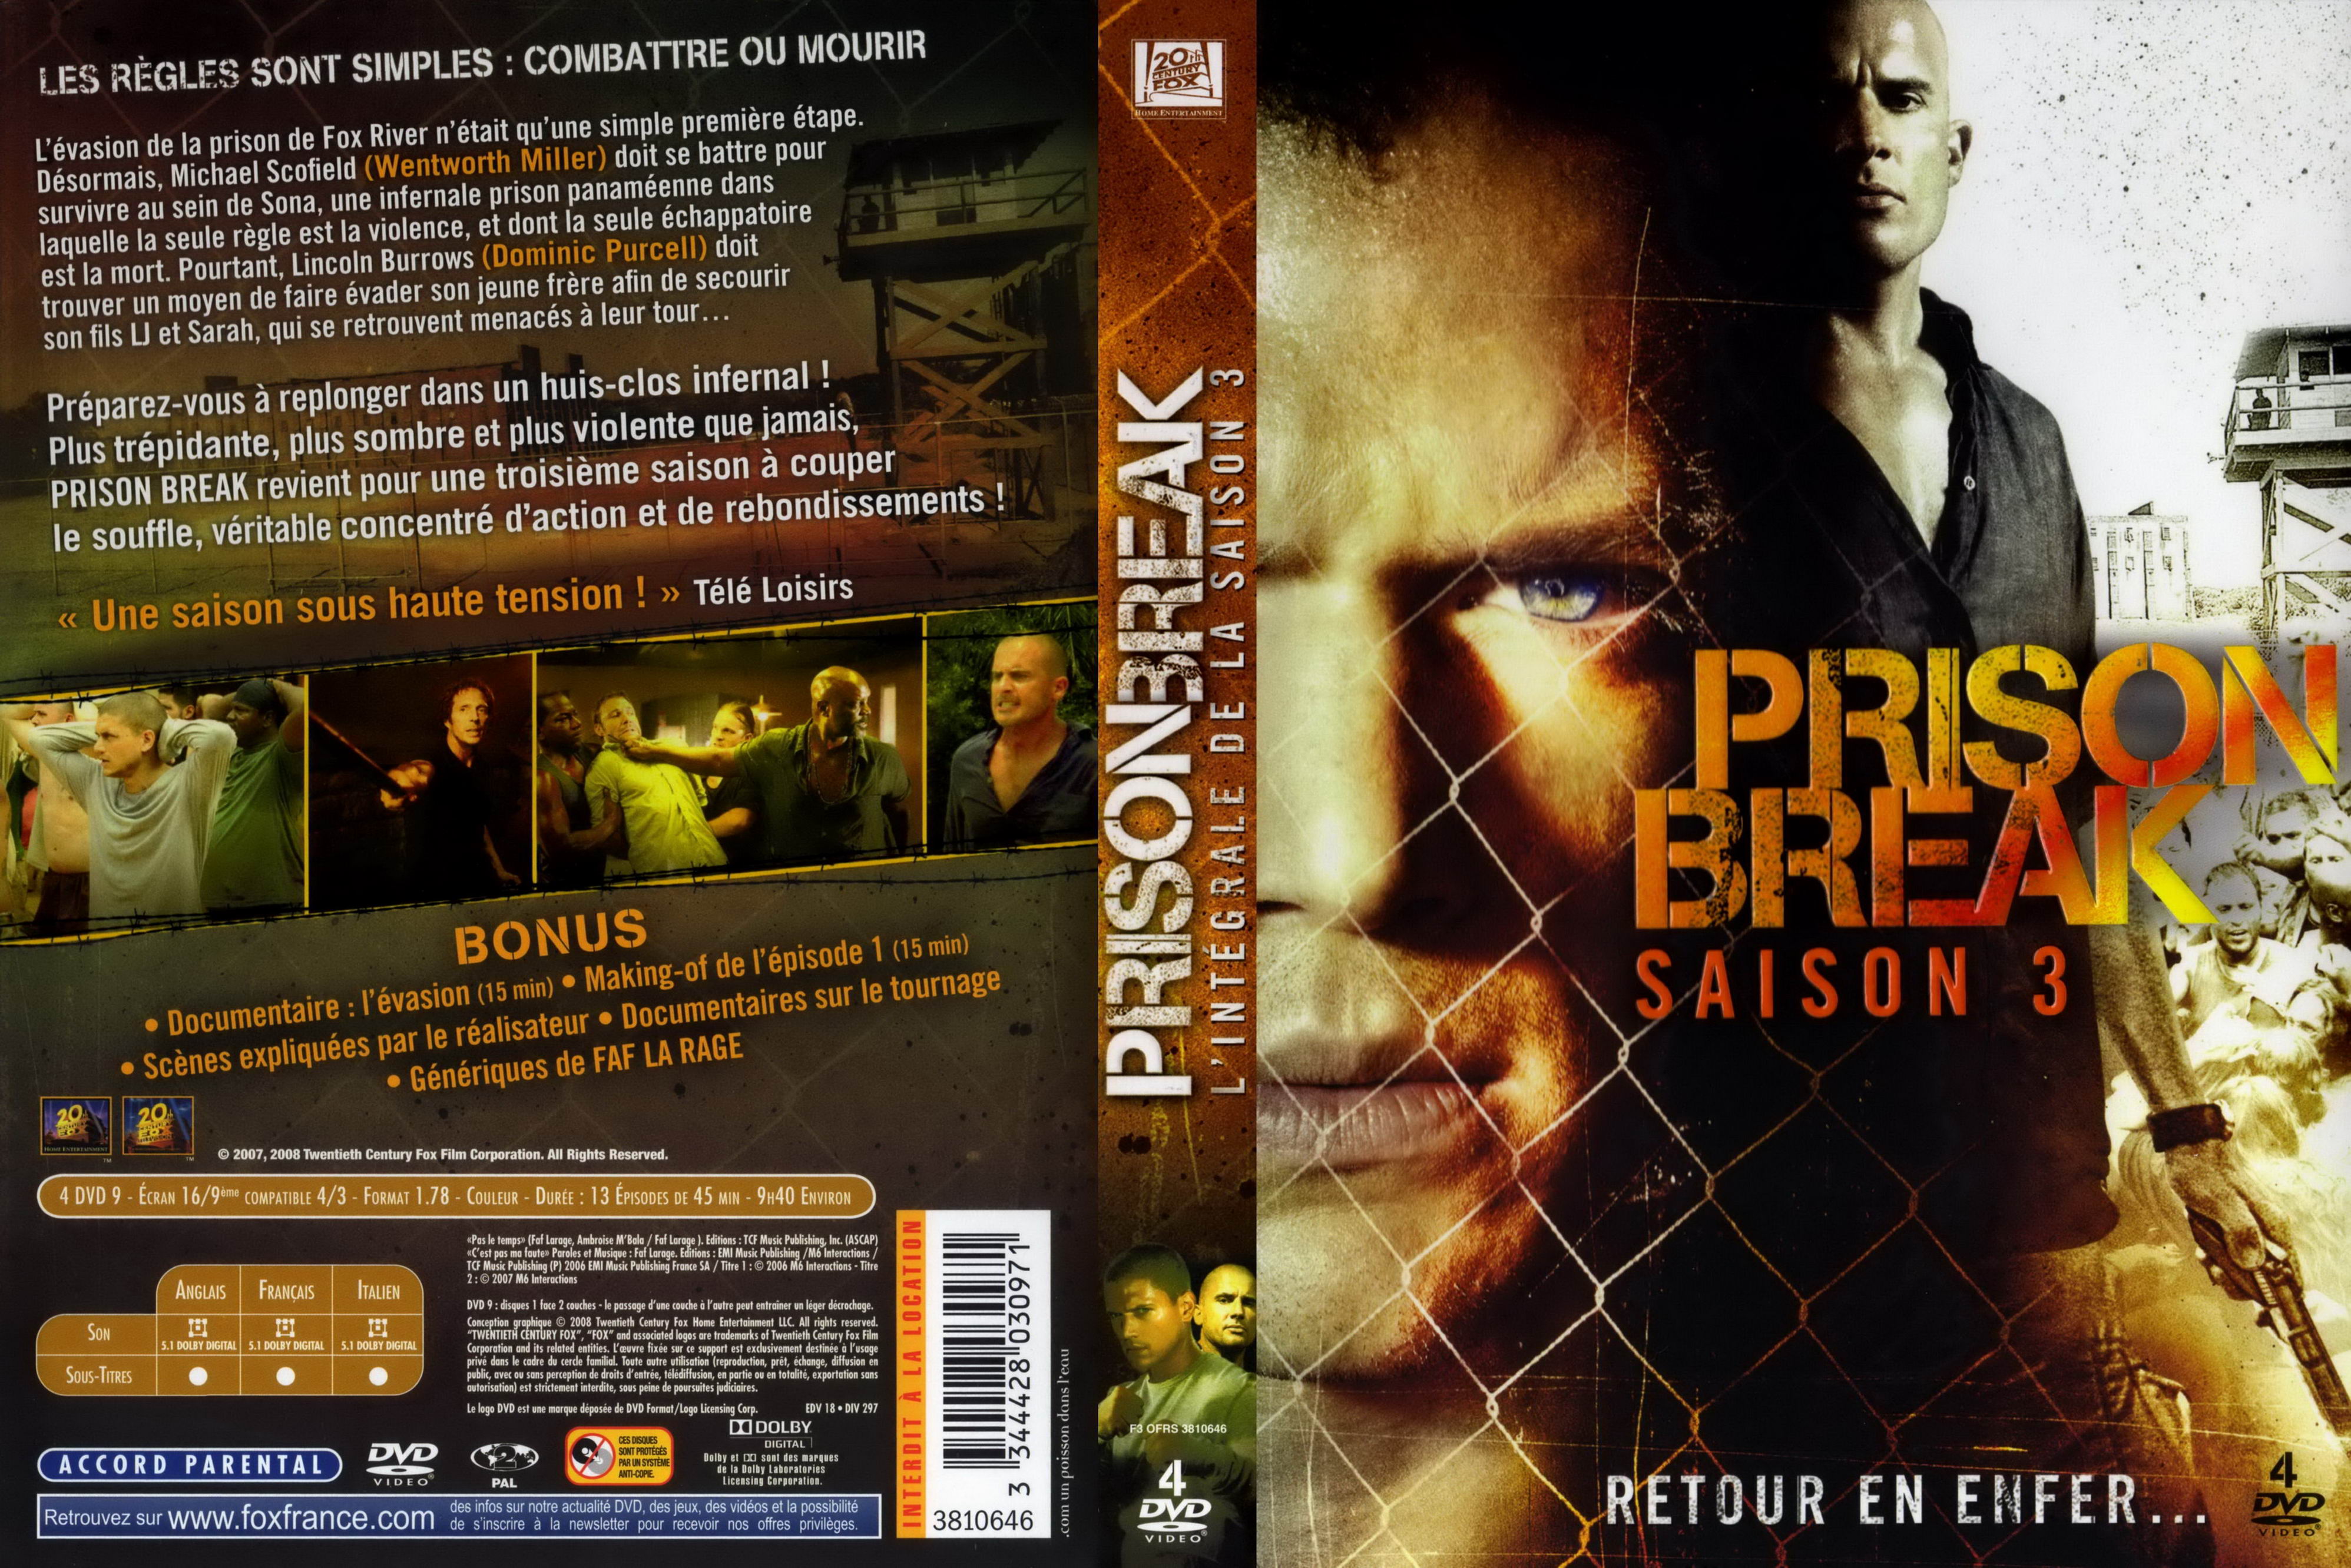 Jaquette DVD Prison break Saison 3 COFFRET